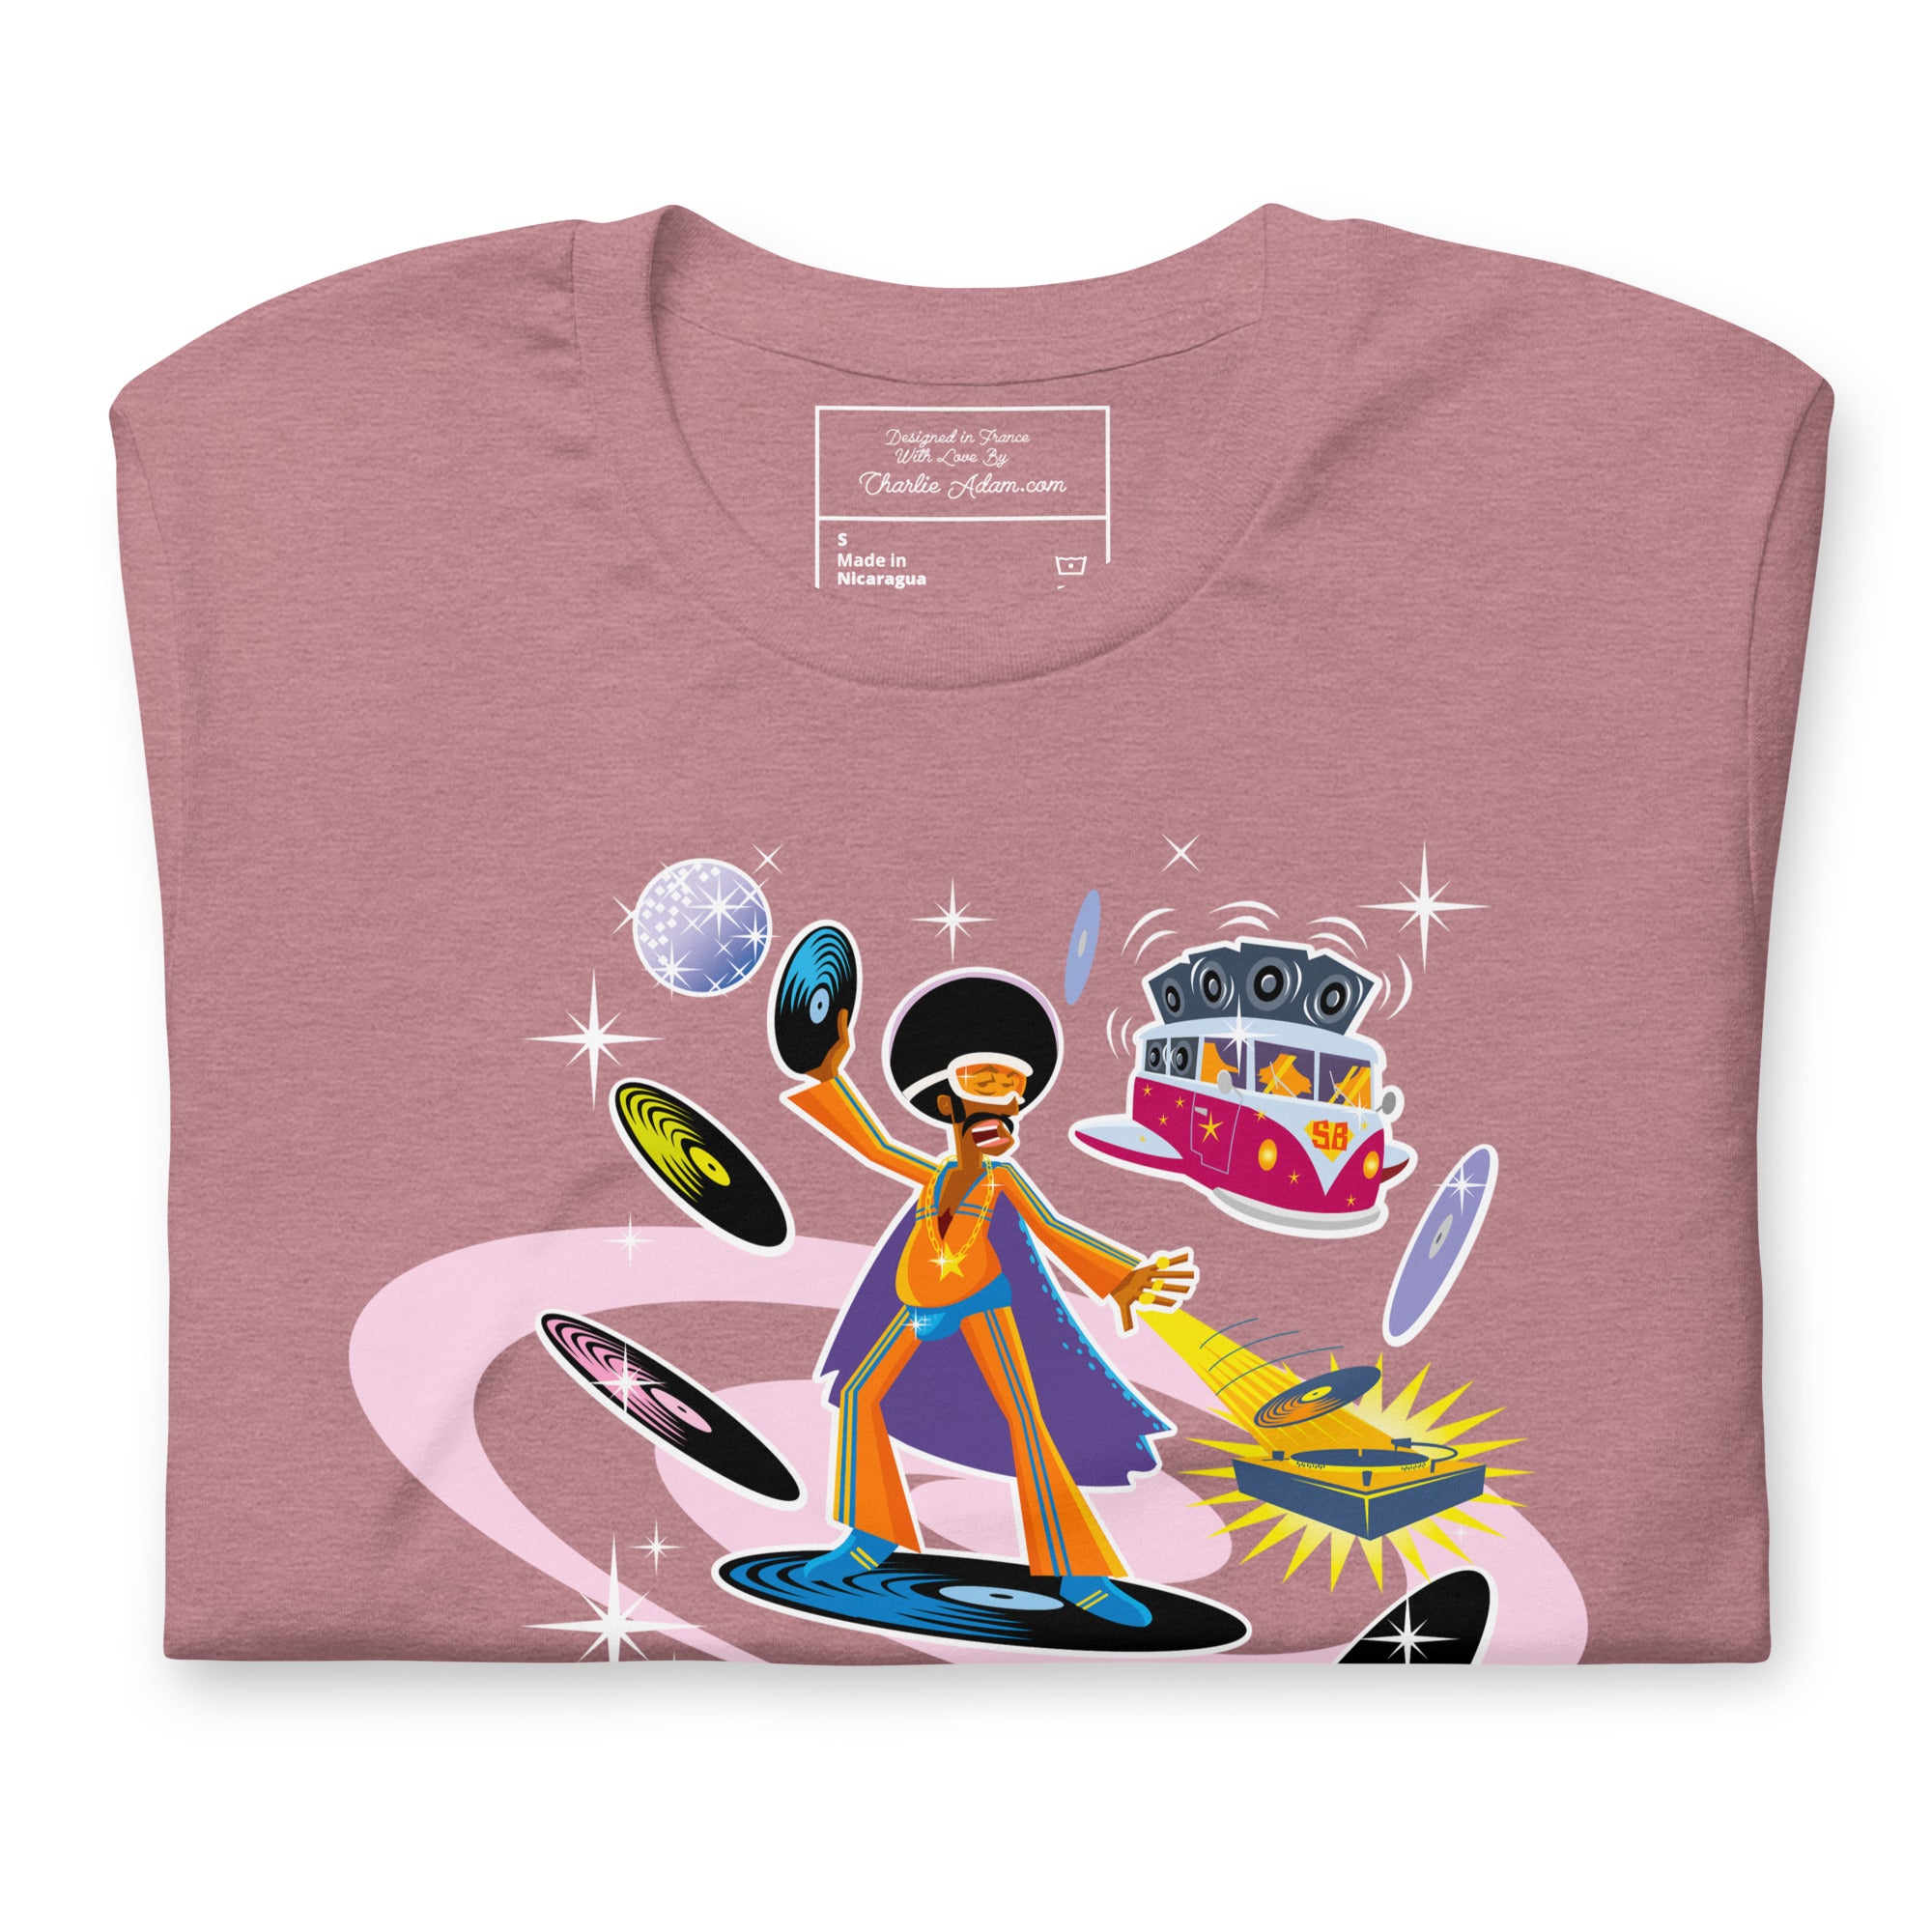 T-shirt en coton unisexe Superboogieman saves the party sur couleurs chinées vives